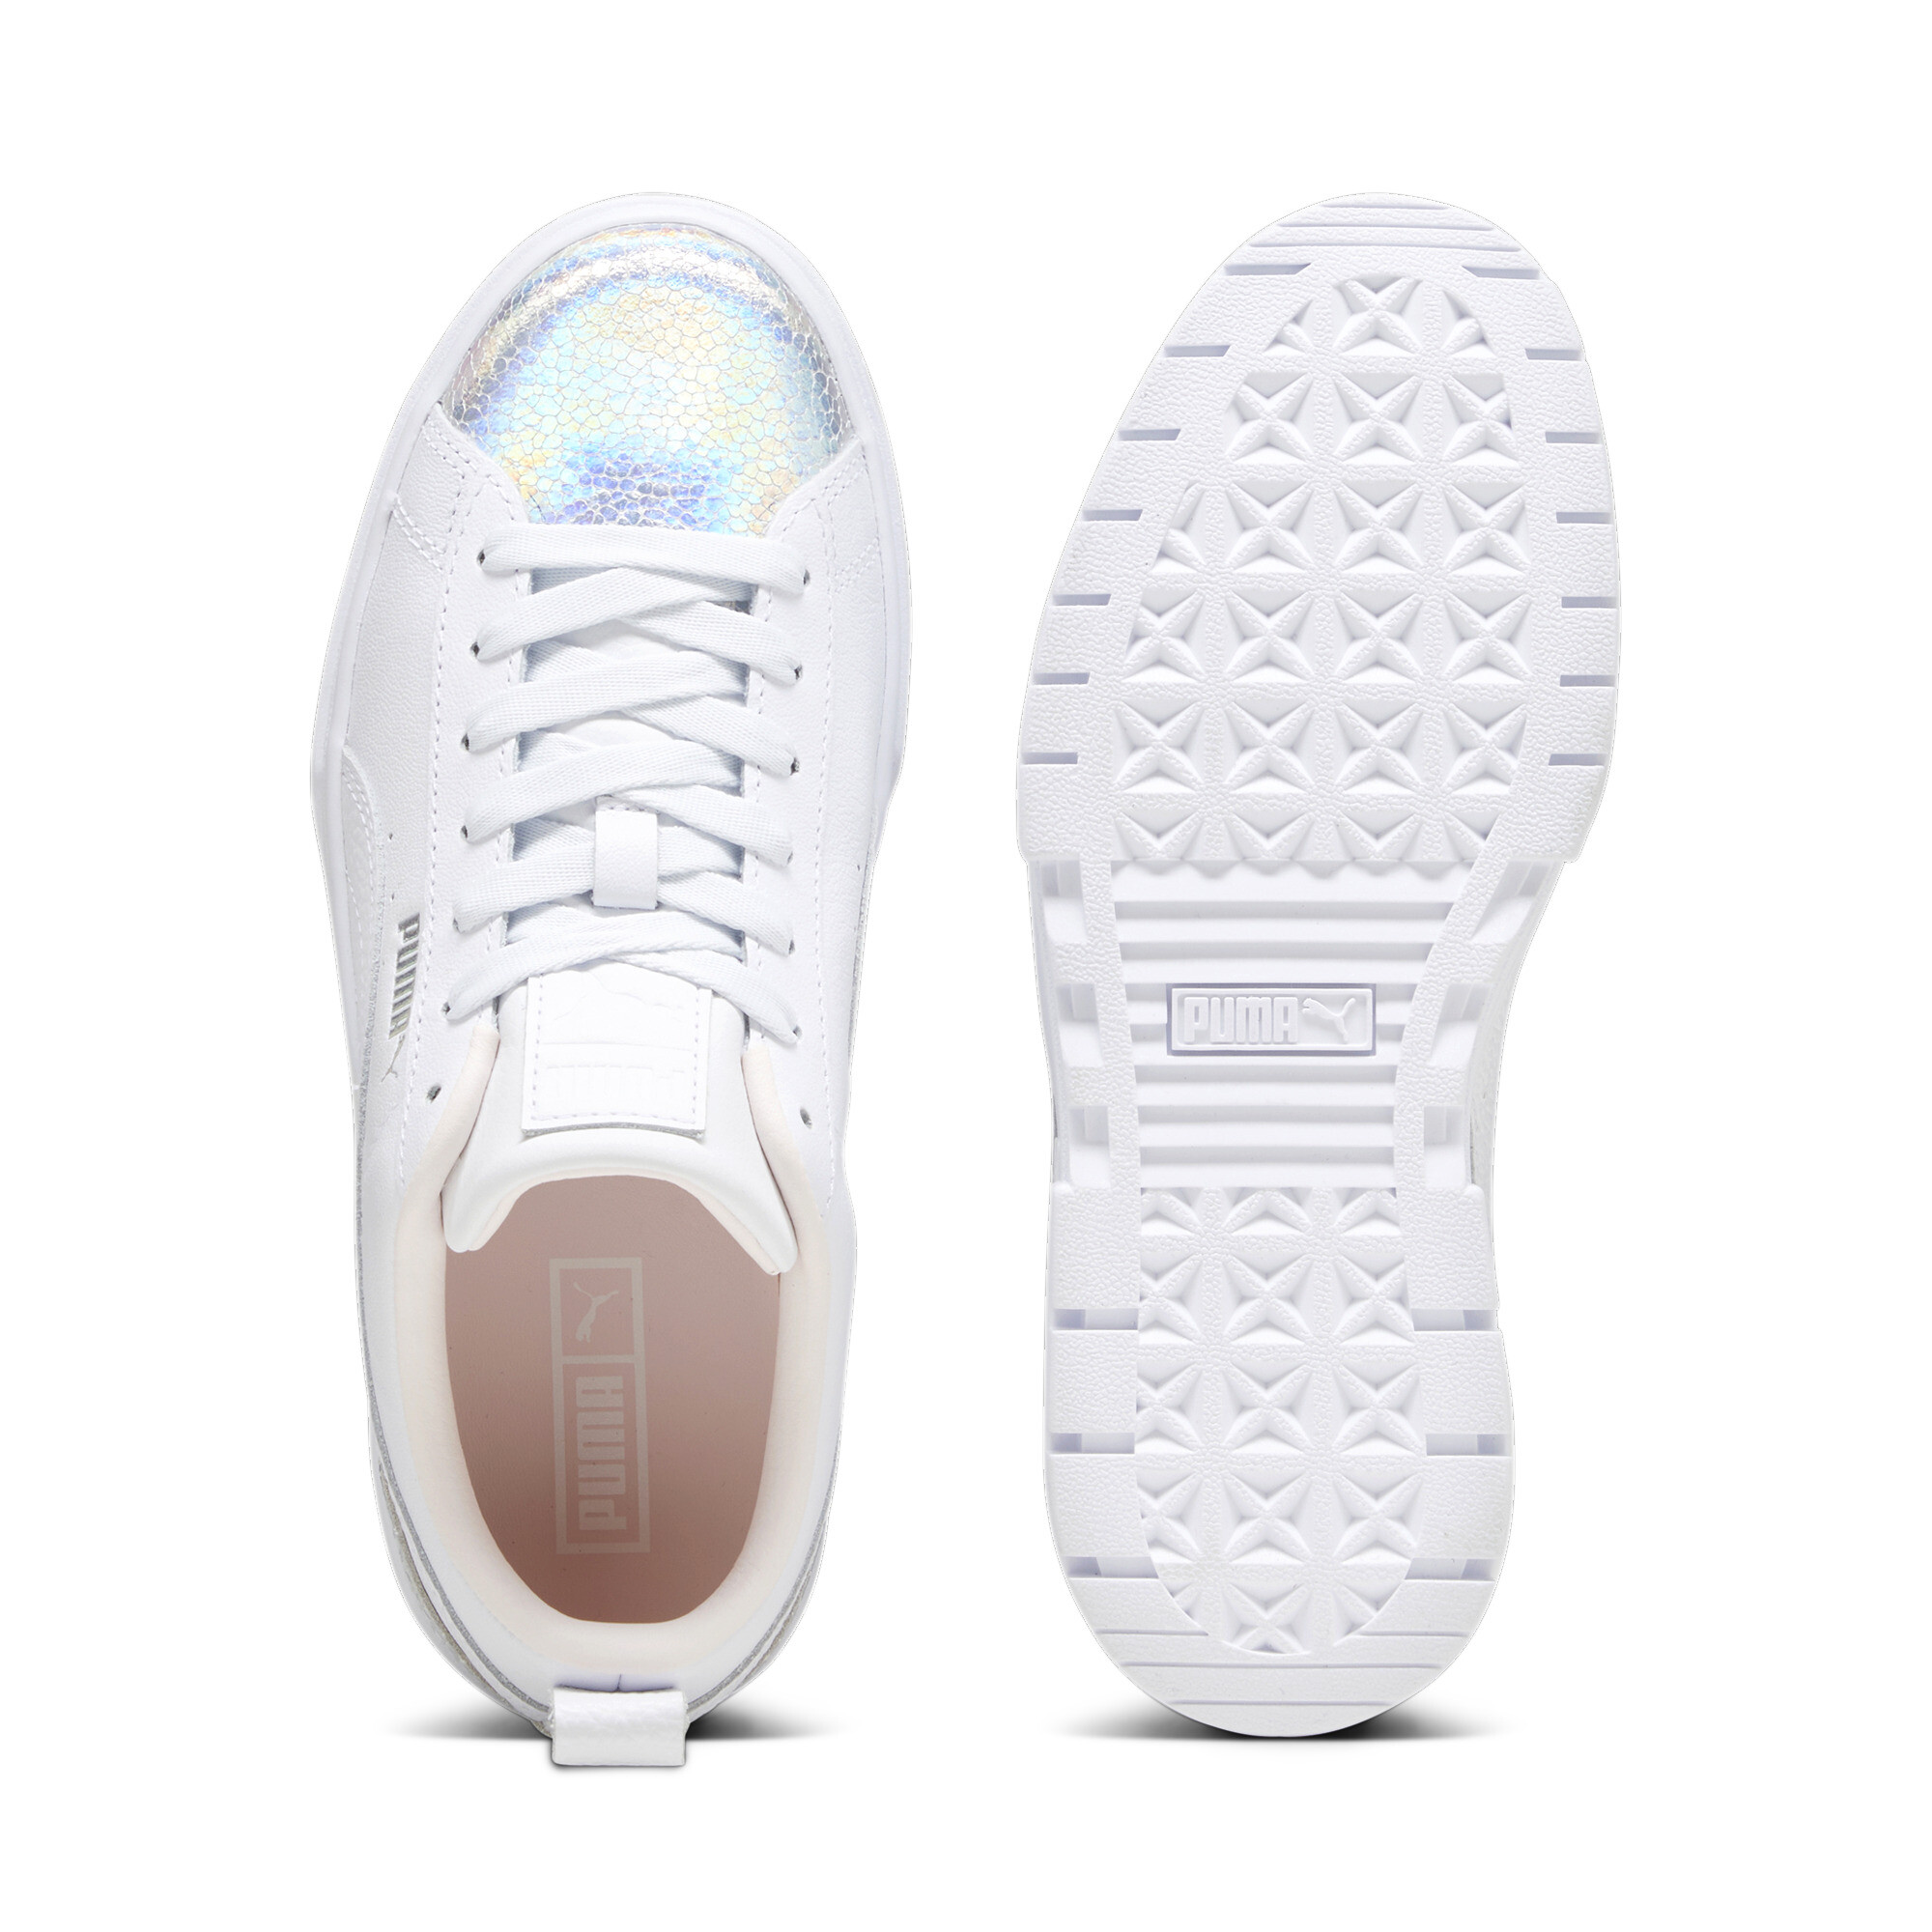 Women's PUMA Mayze Tomorrowland Fashion Sneakers Women In White, Size EU 37